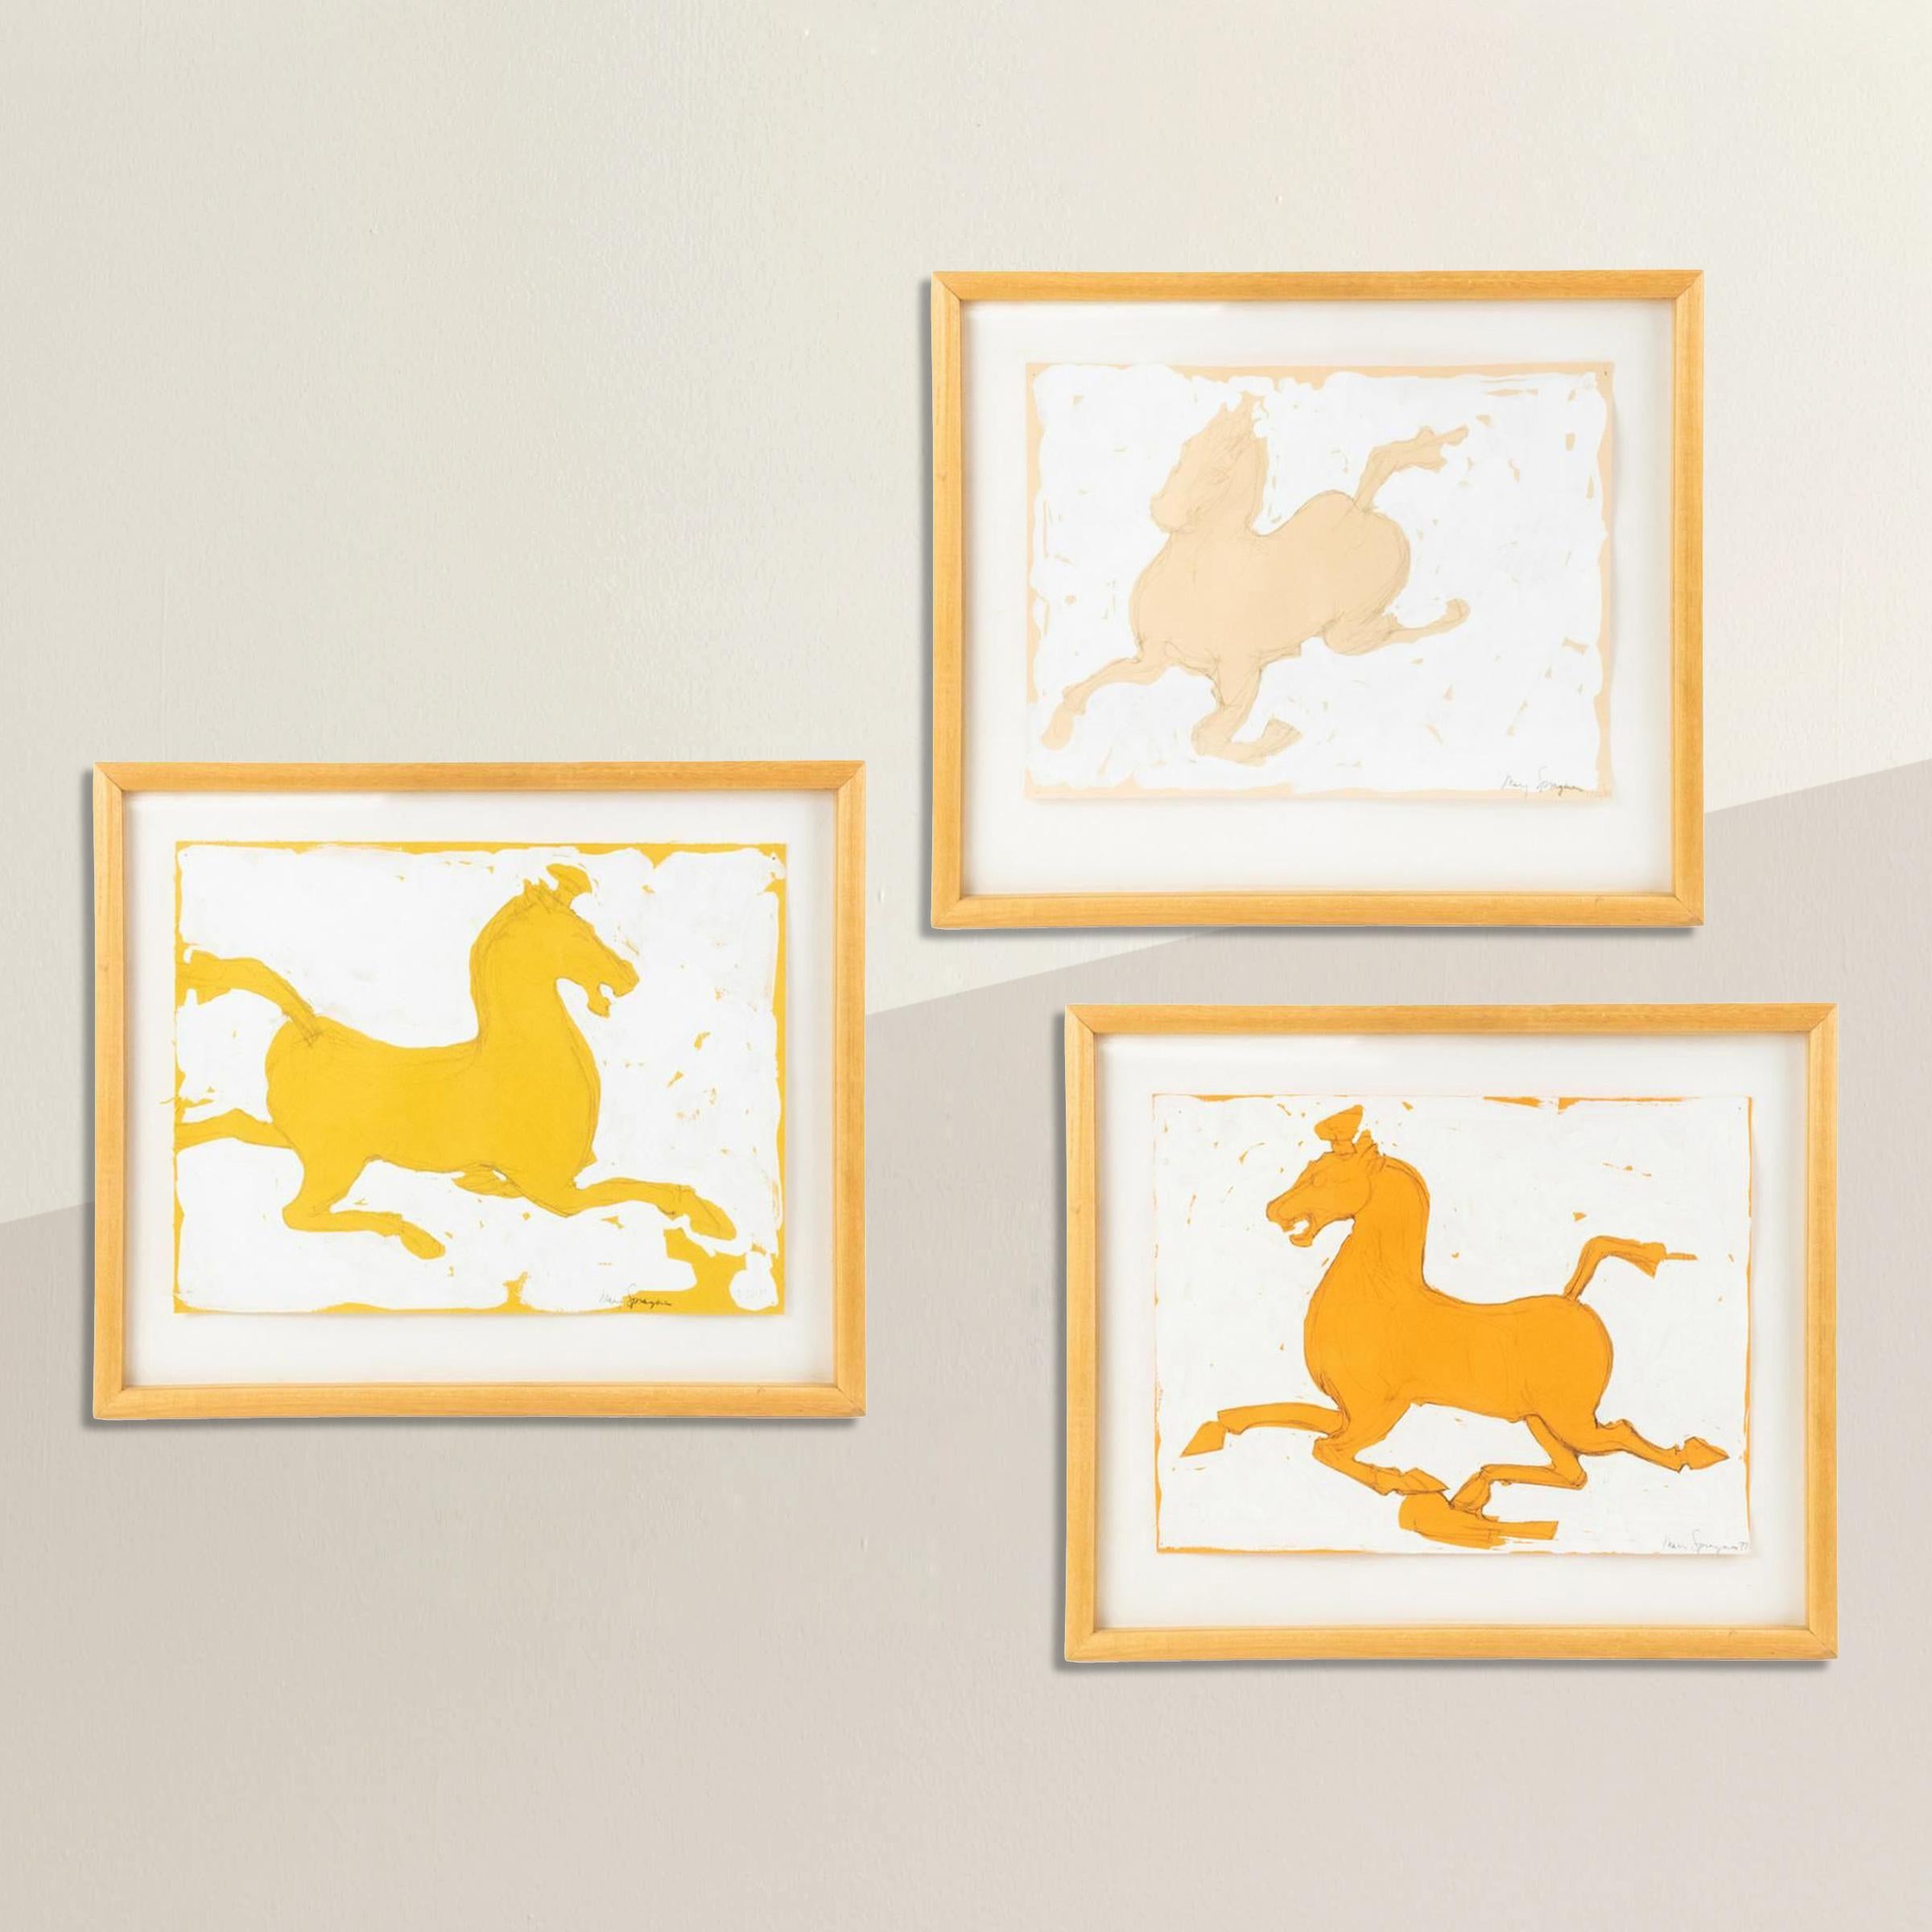 Un ensemble de trois peintures ludiques de chevaux par Mary Sprague, datées de 1988. Chaque peinture est rendue au graphite et à la peinture blanche sur des papiers jaunes et orange, et flottent dans des cadres de galerie simples en érable et sous